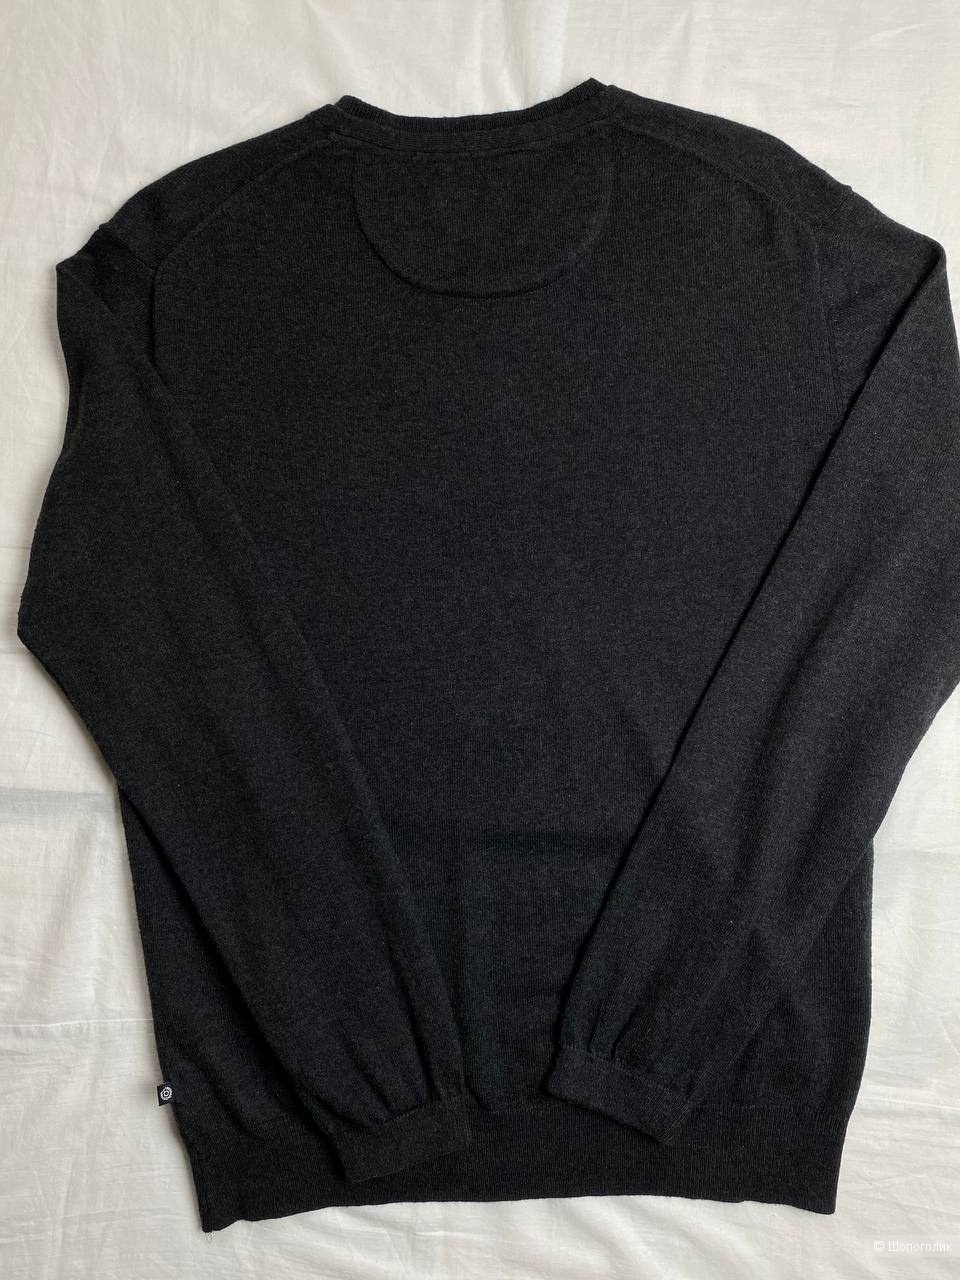 Пуловер Buggati, есть кашемир, размер: L